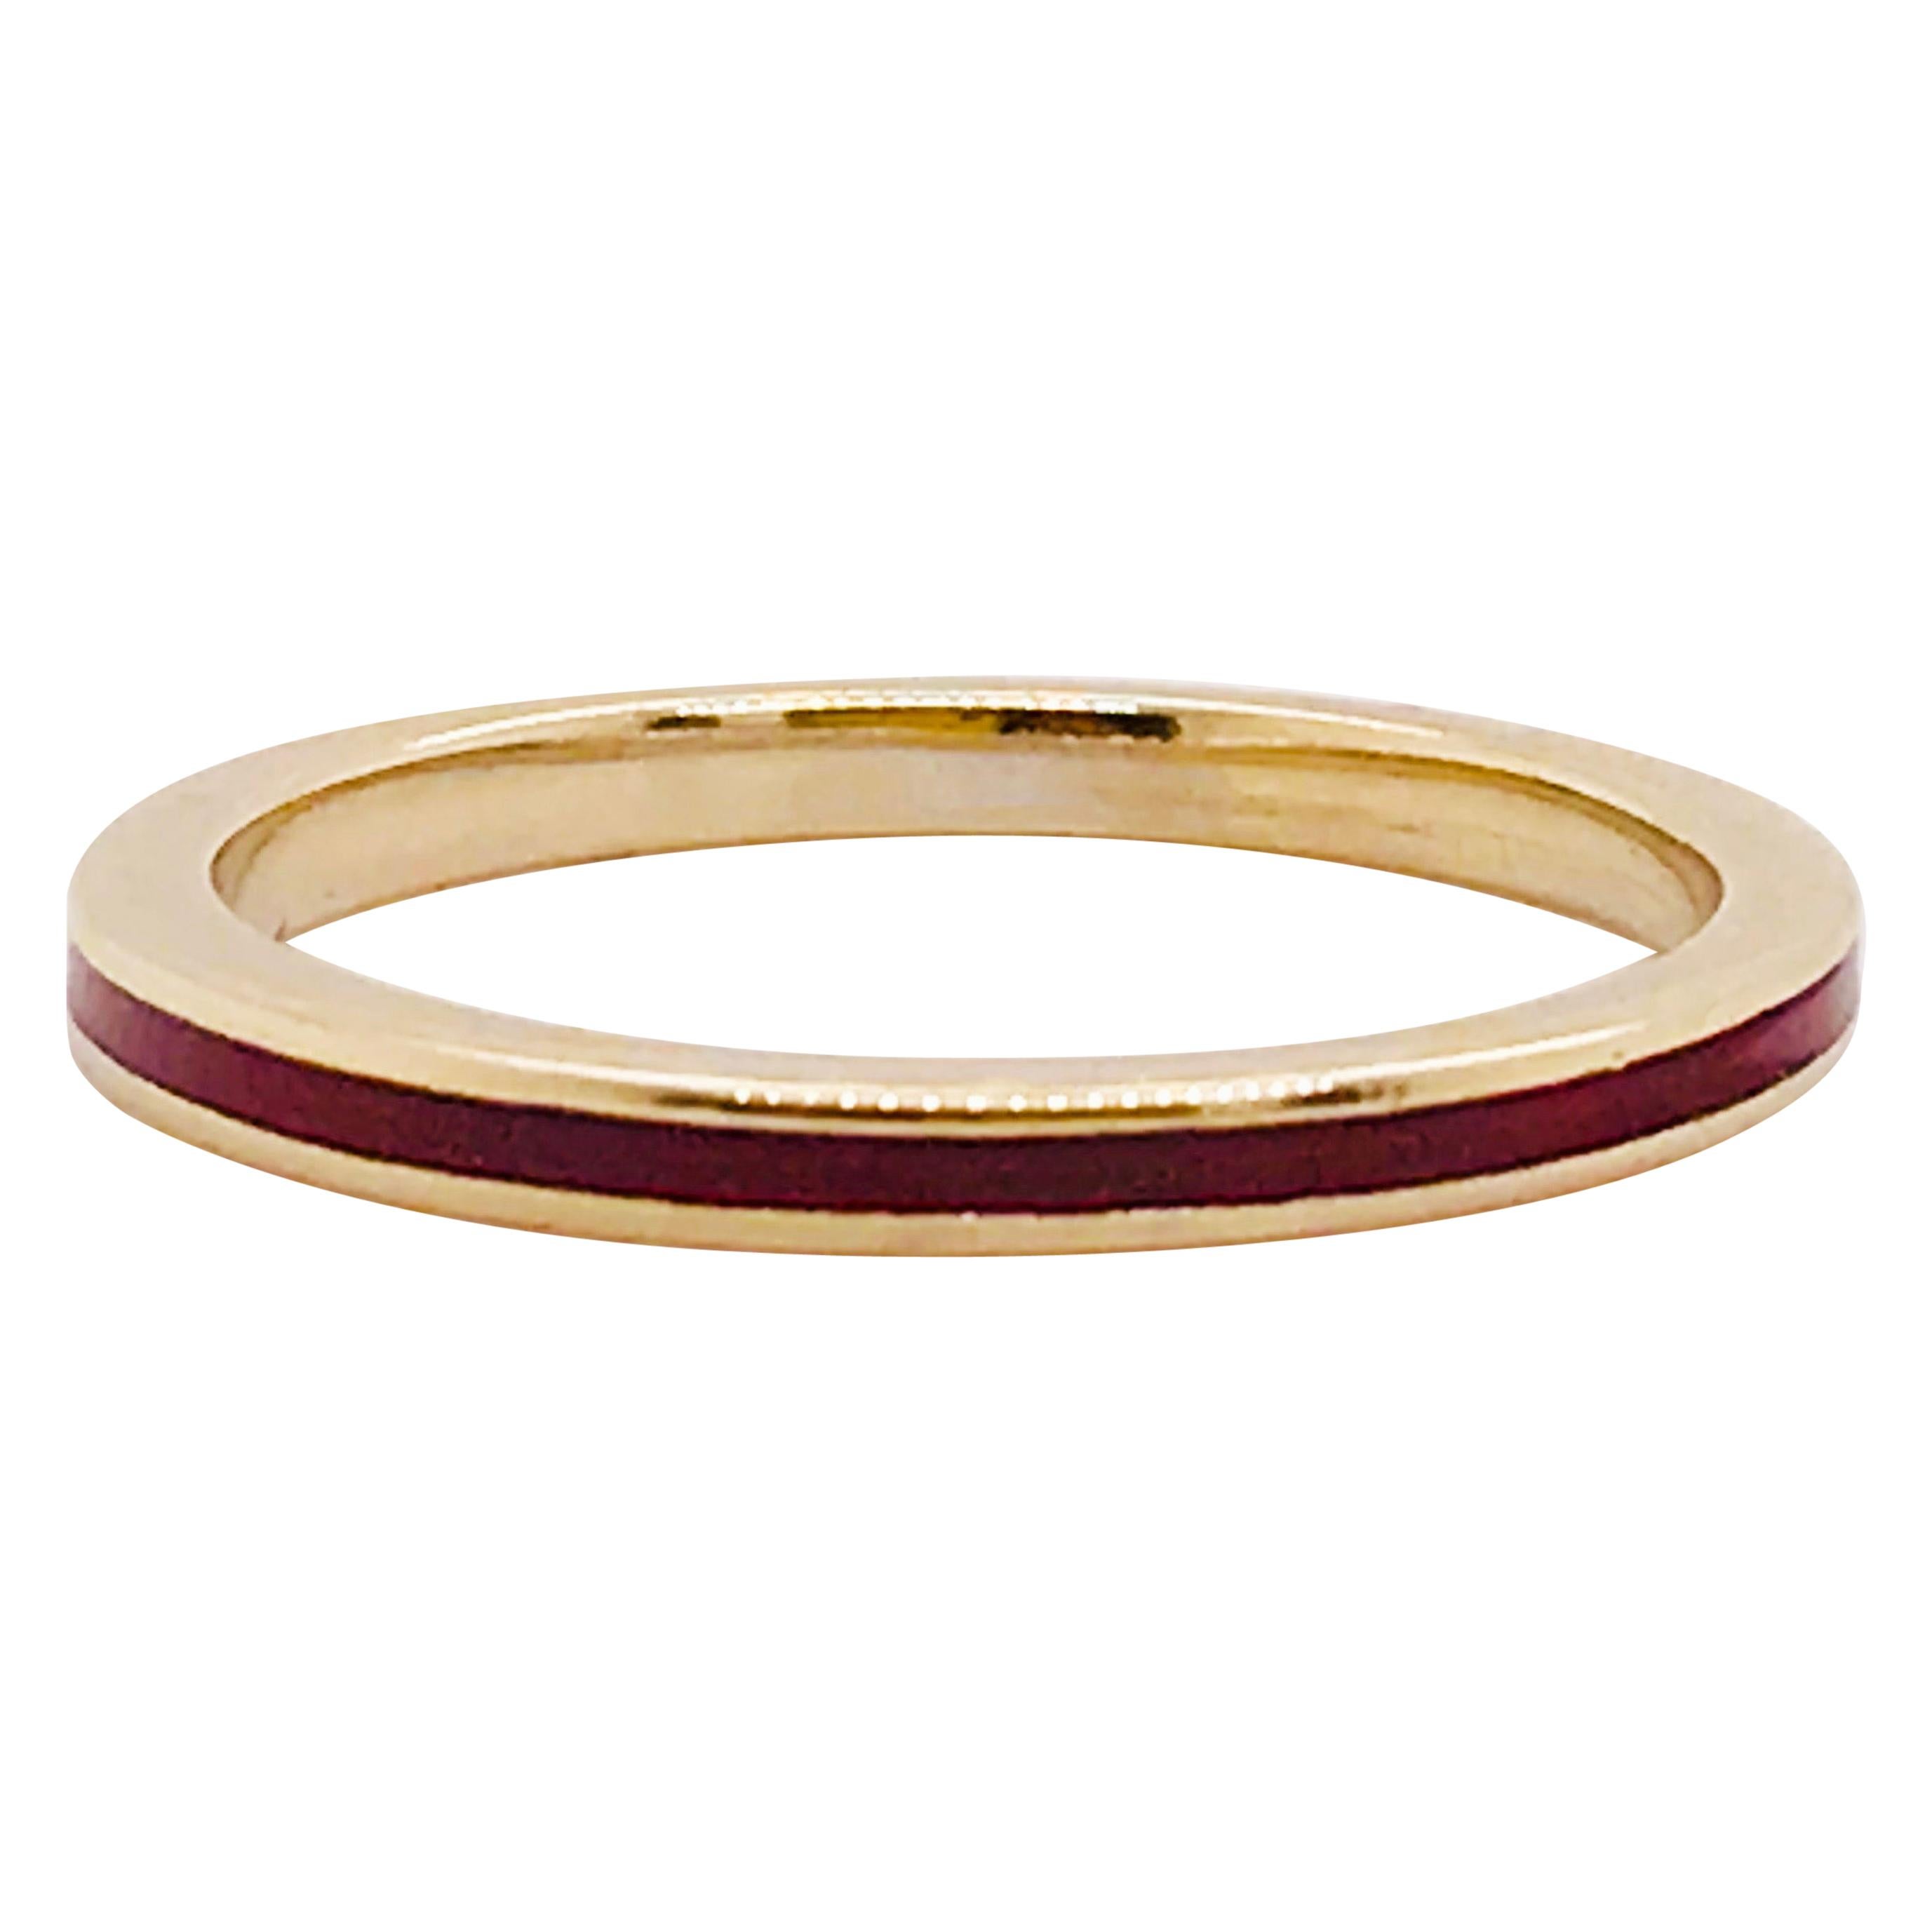 Designer Hidalgo Original Red Enamel 18K Yellow Gold Ring, Hidalgo Gold Band 18K